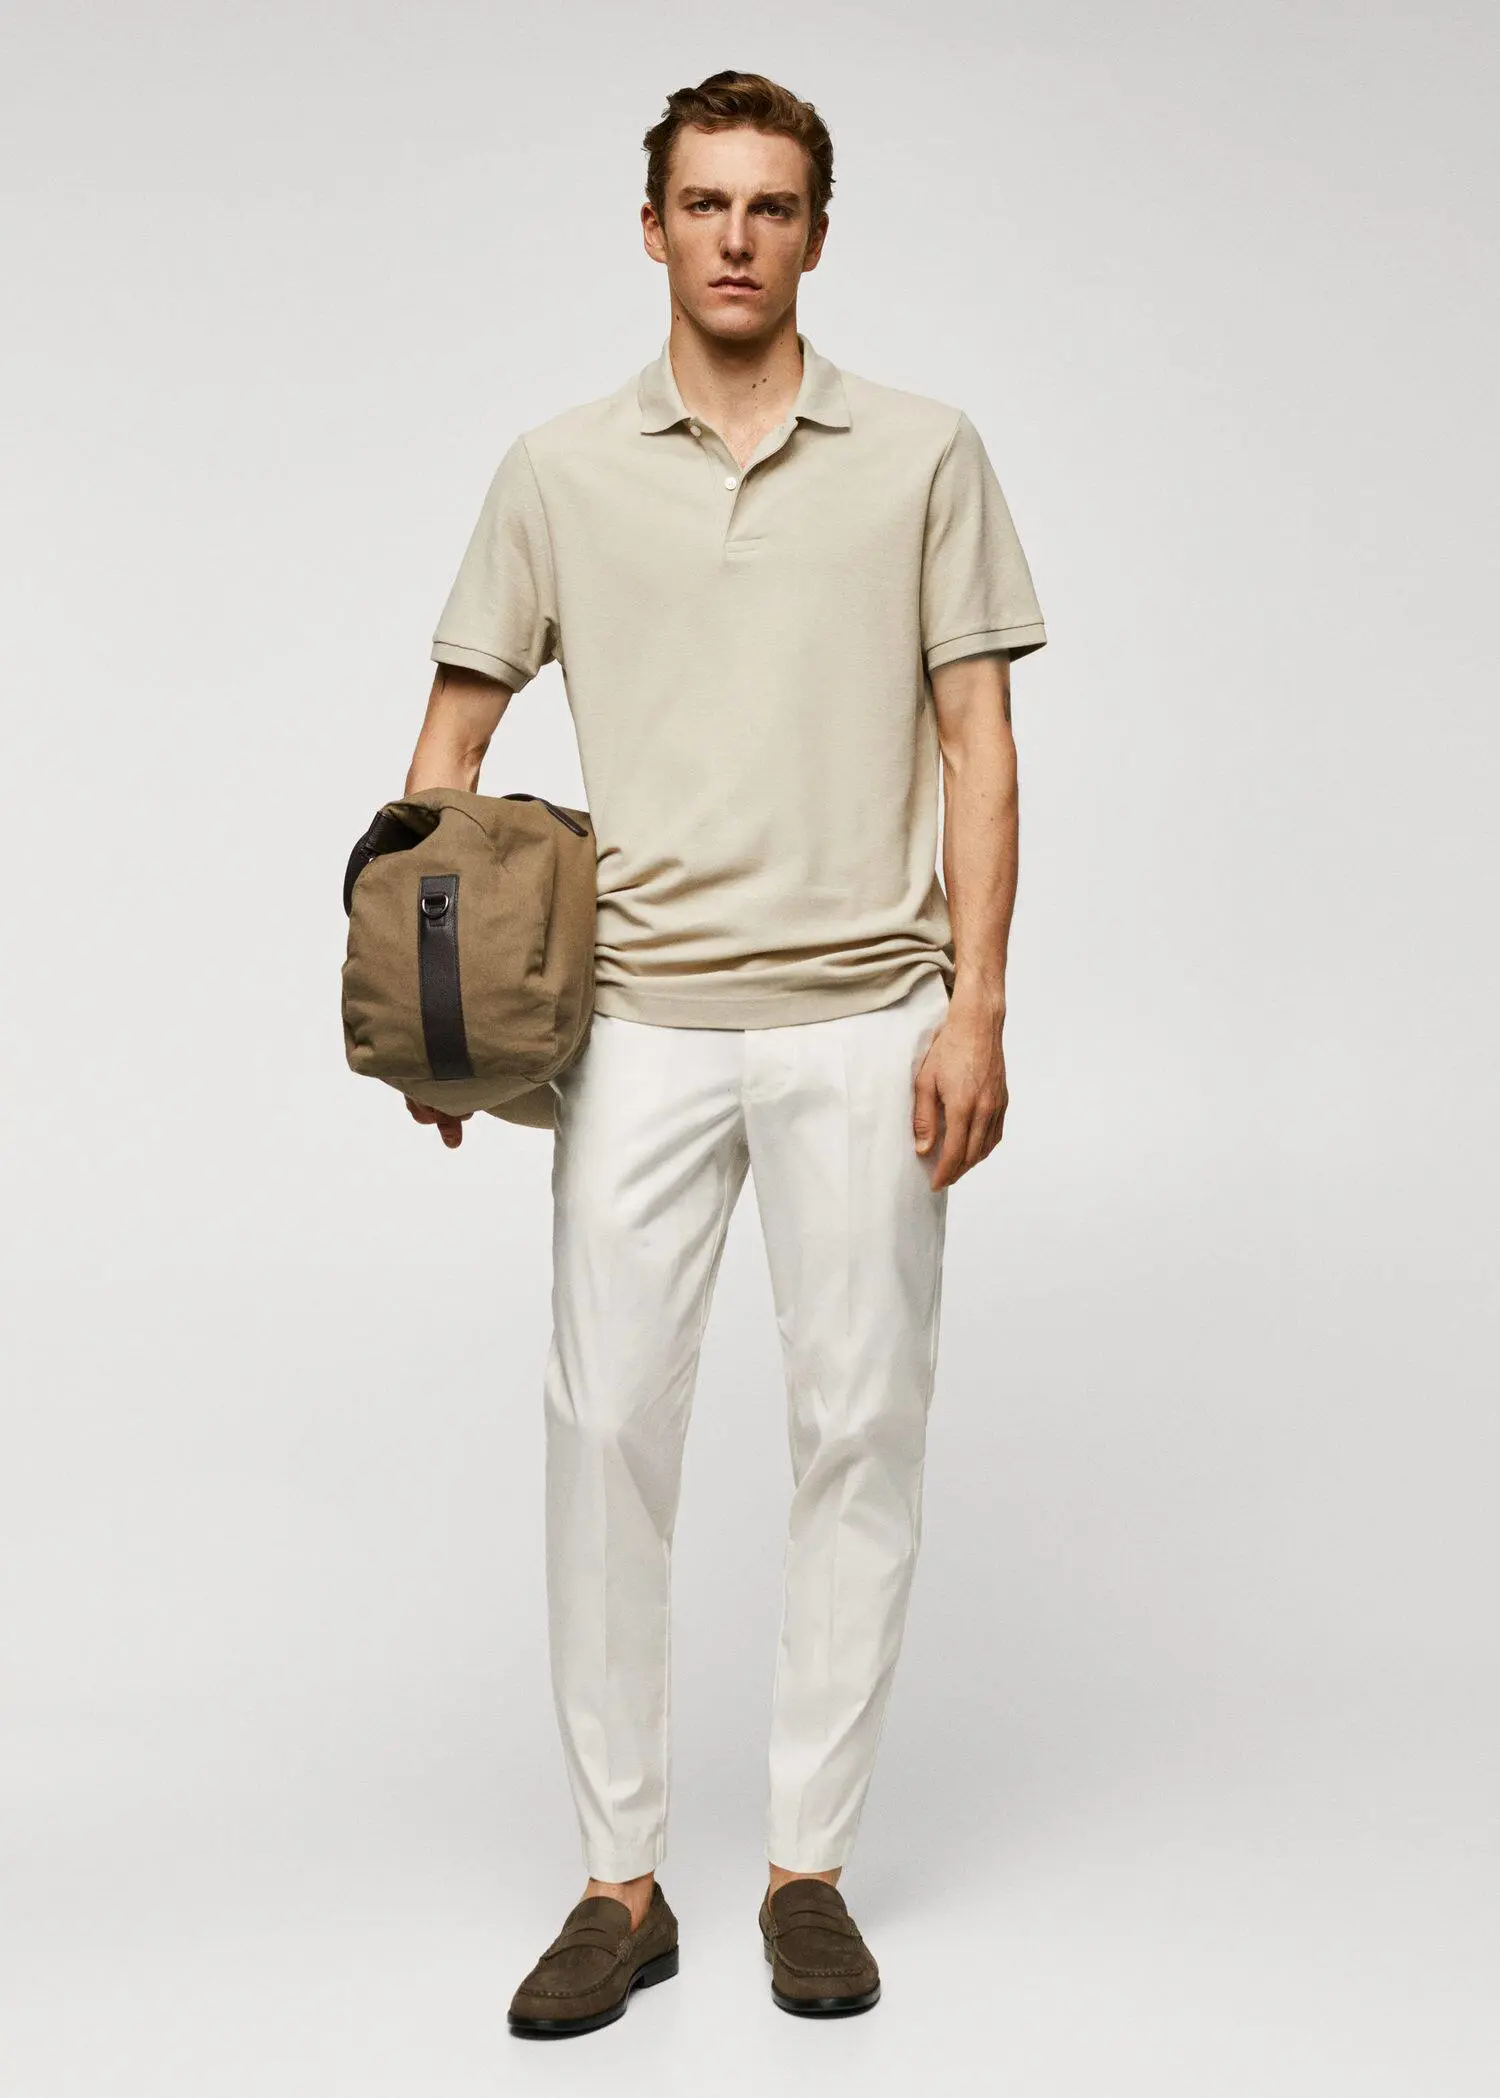 Mango 100% cotton pique polo shirt. a man in a tan polo shirt holding a bag. 